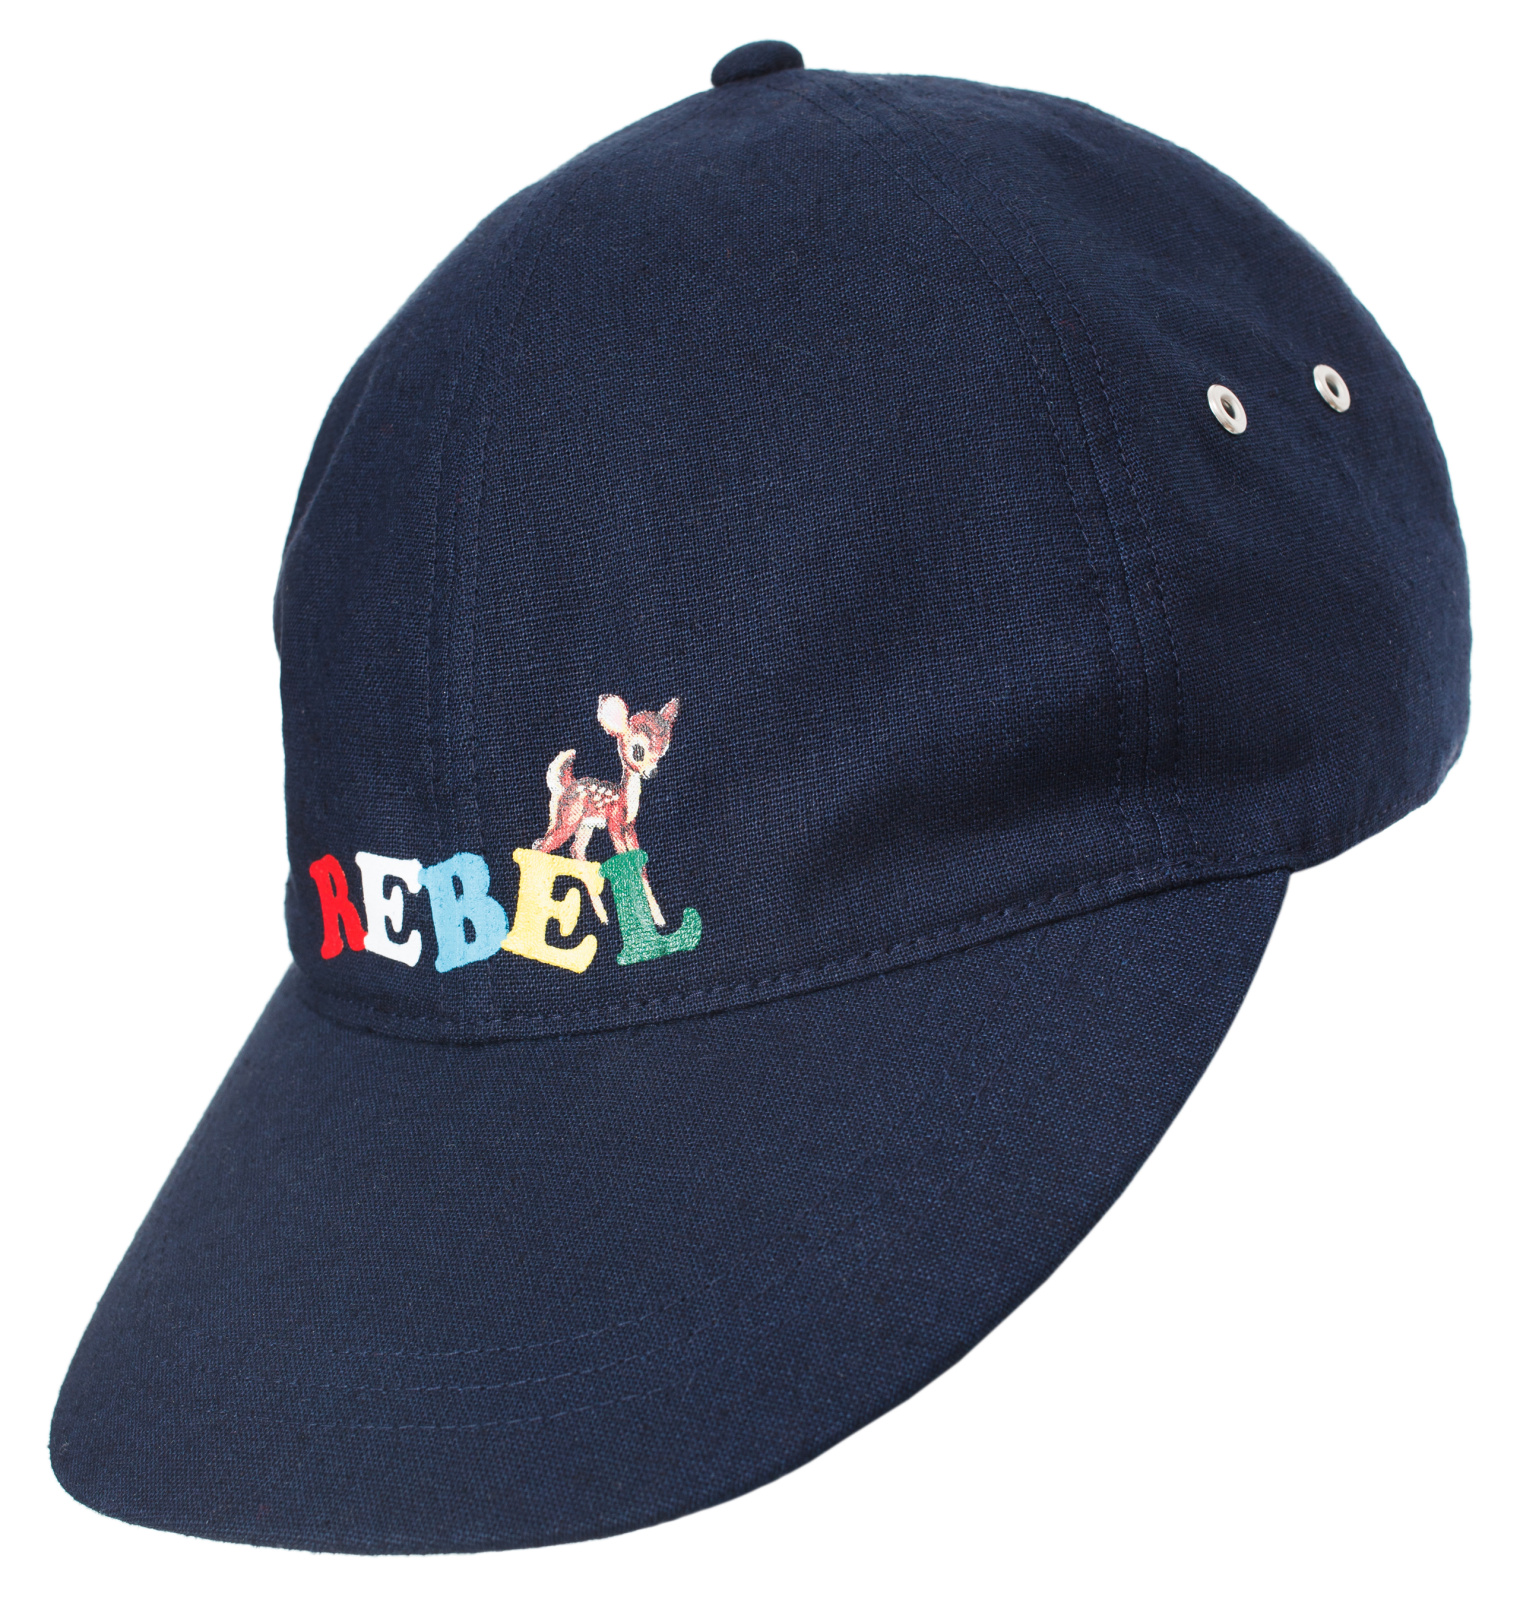 Buy Blue Logo Print Baseball Cap for Men